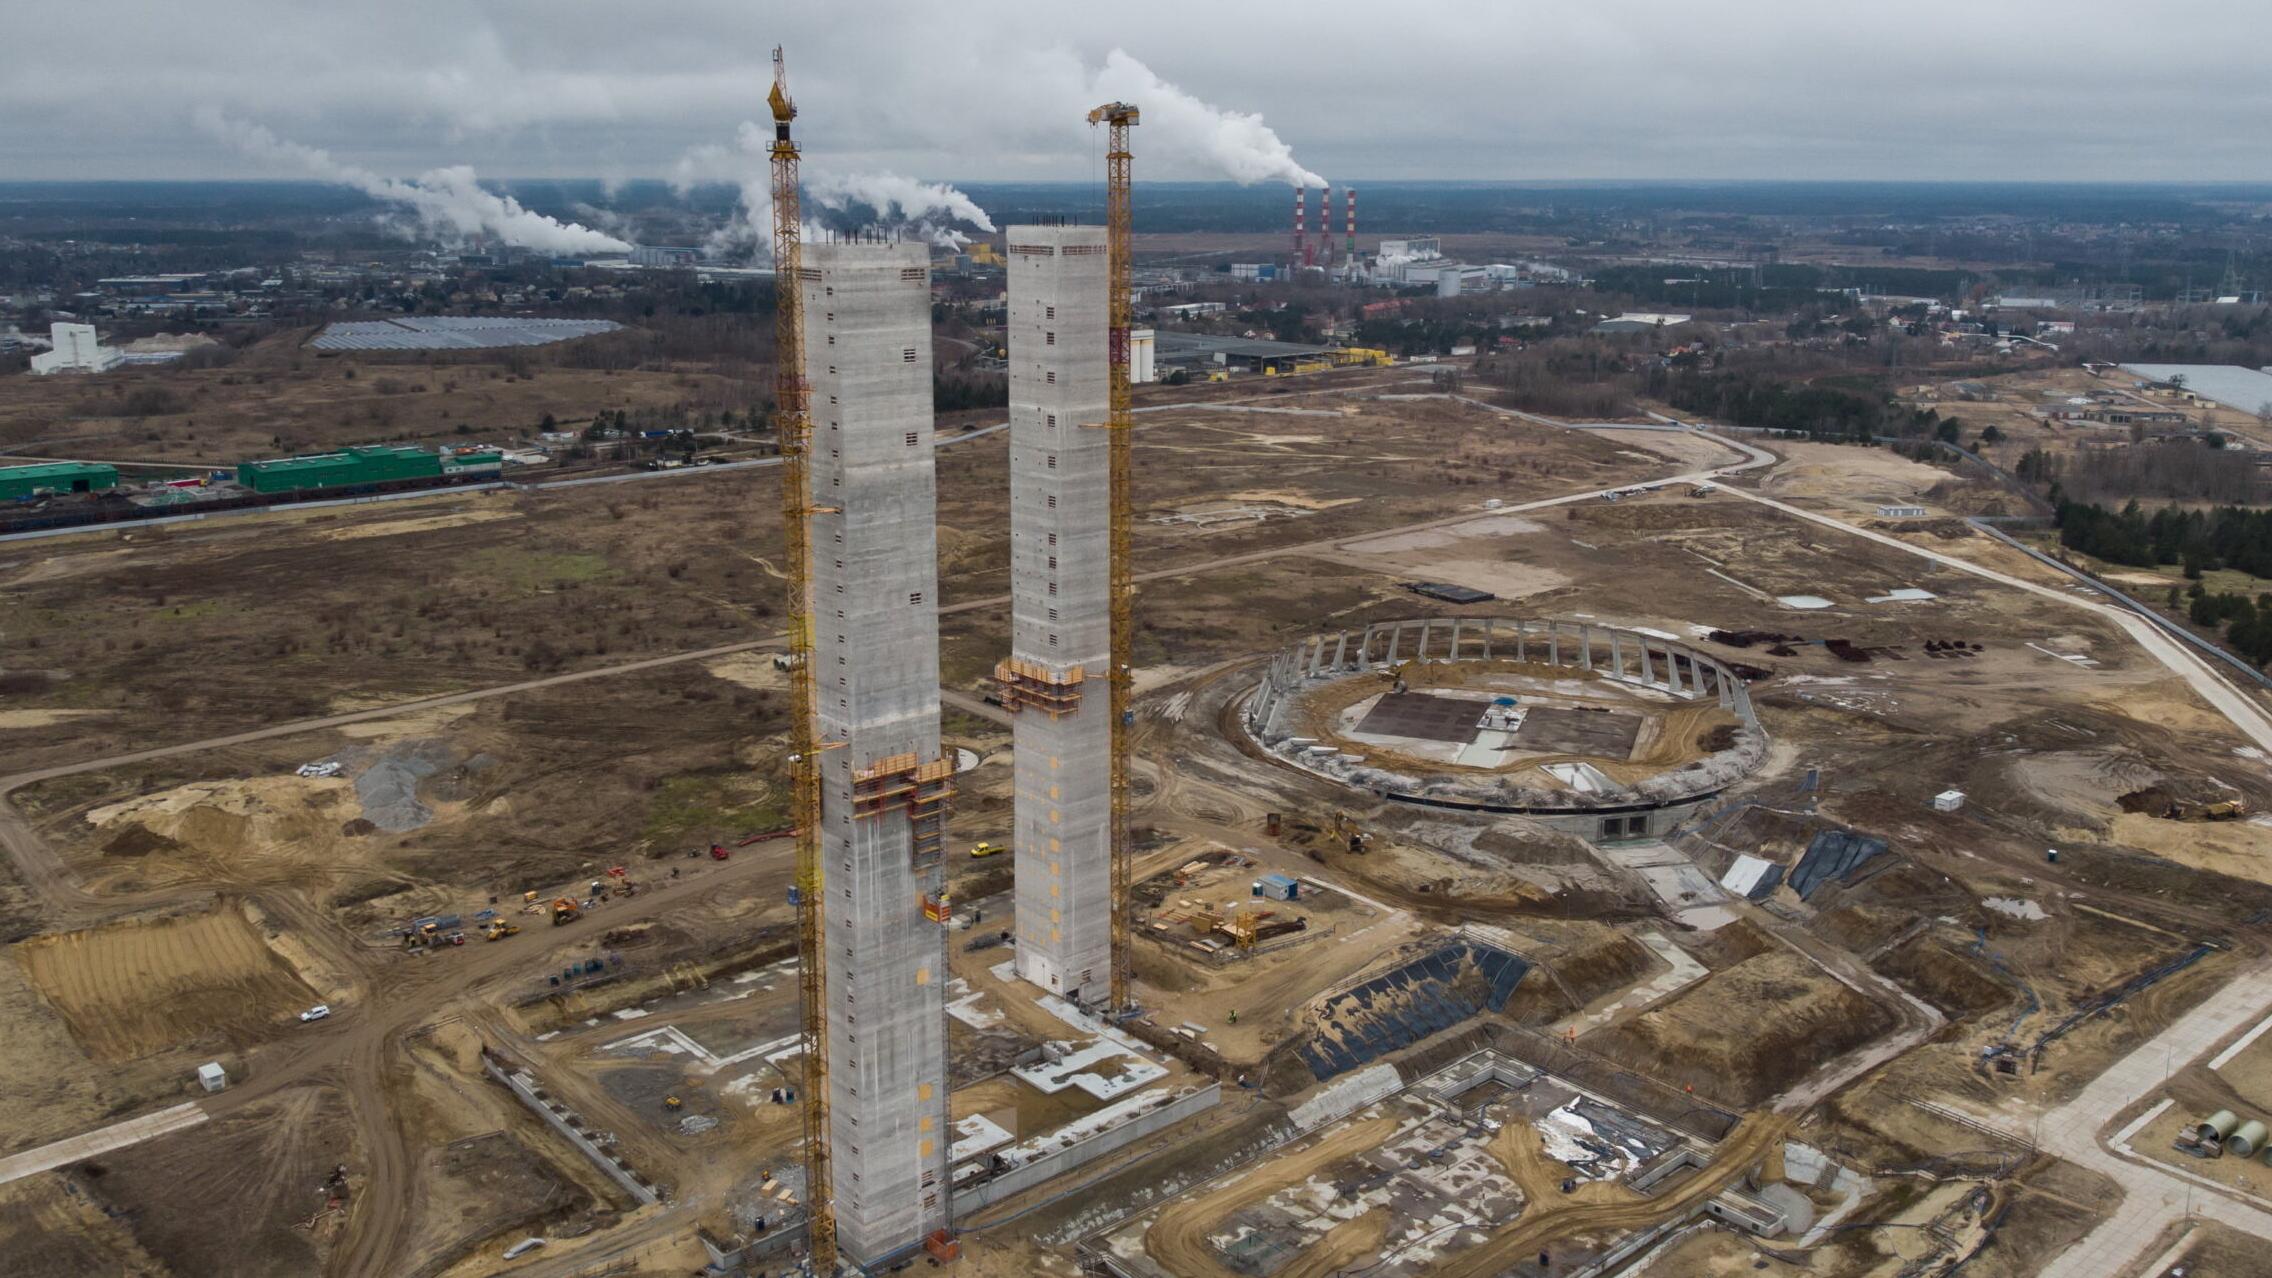 Widok z lotu ptaka teren budowy elektrowni, stoja dwie wieże chłodnicze